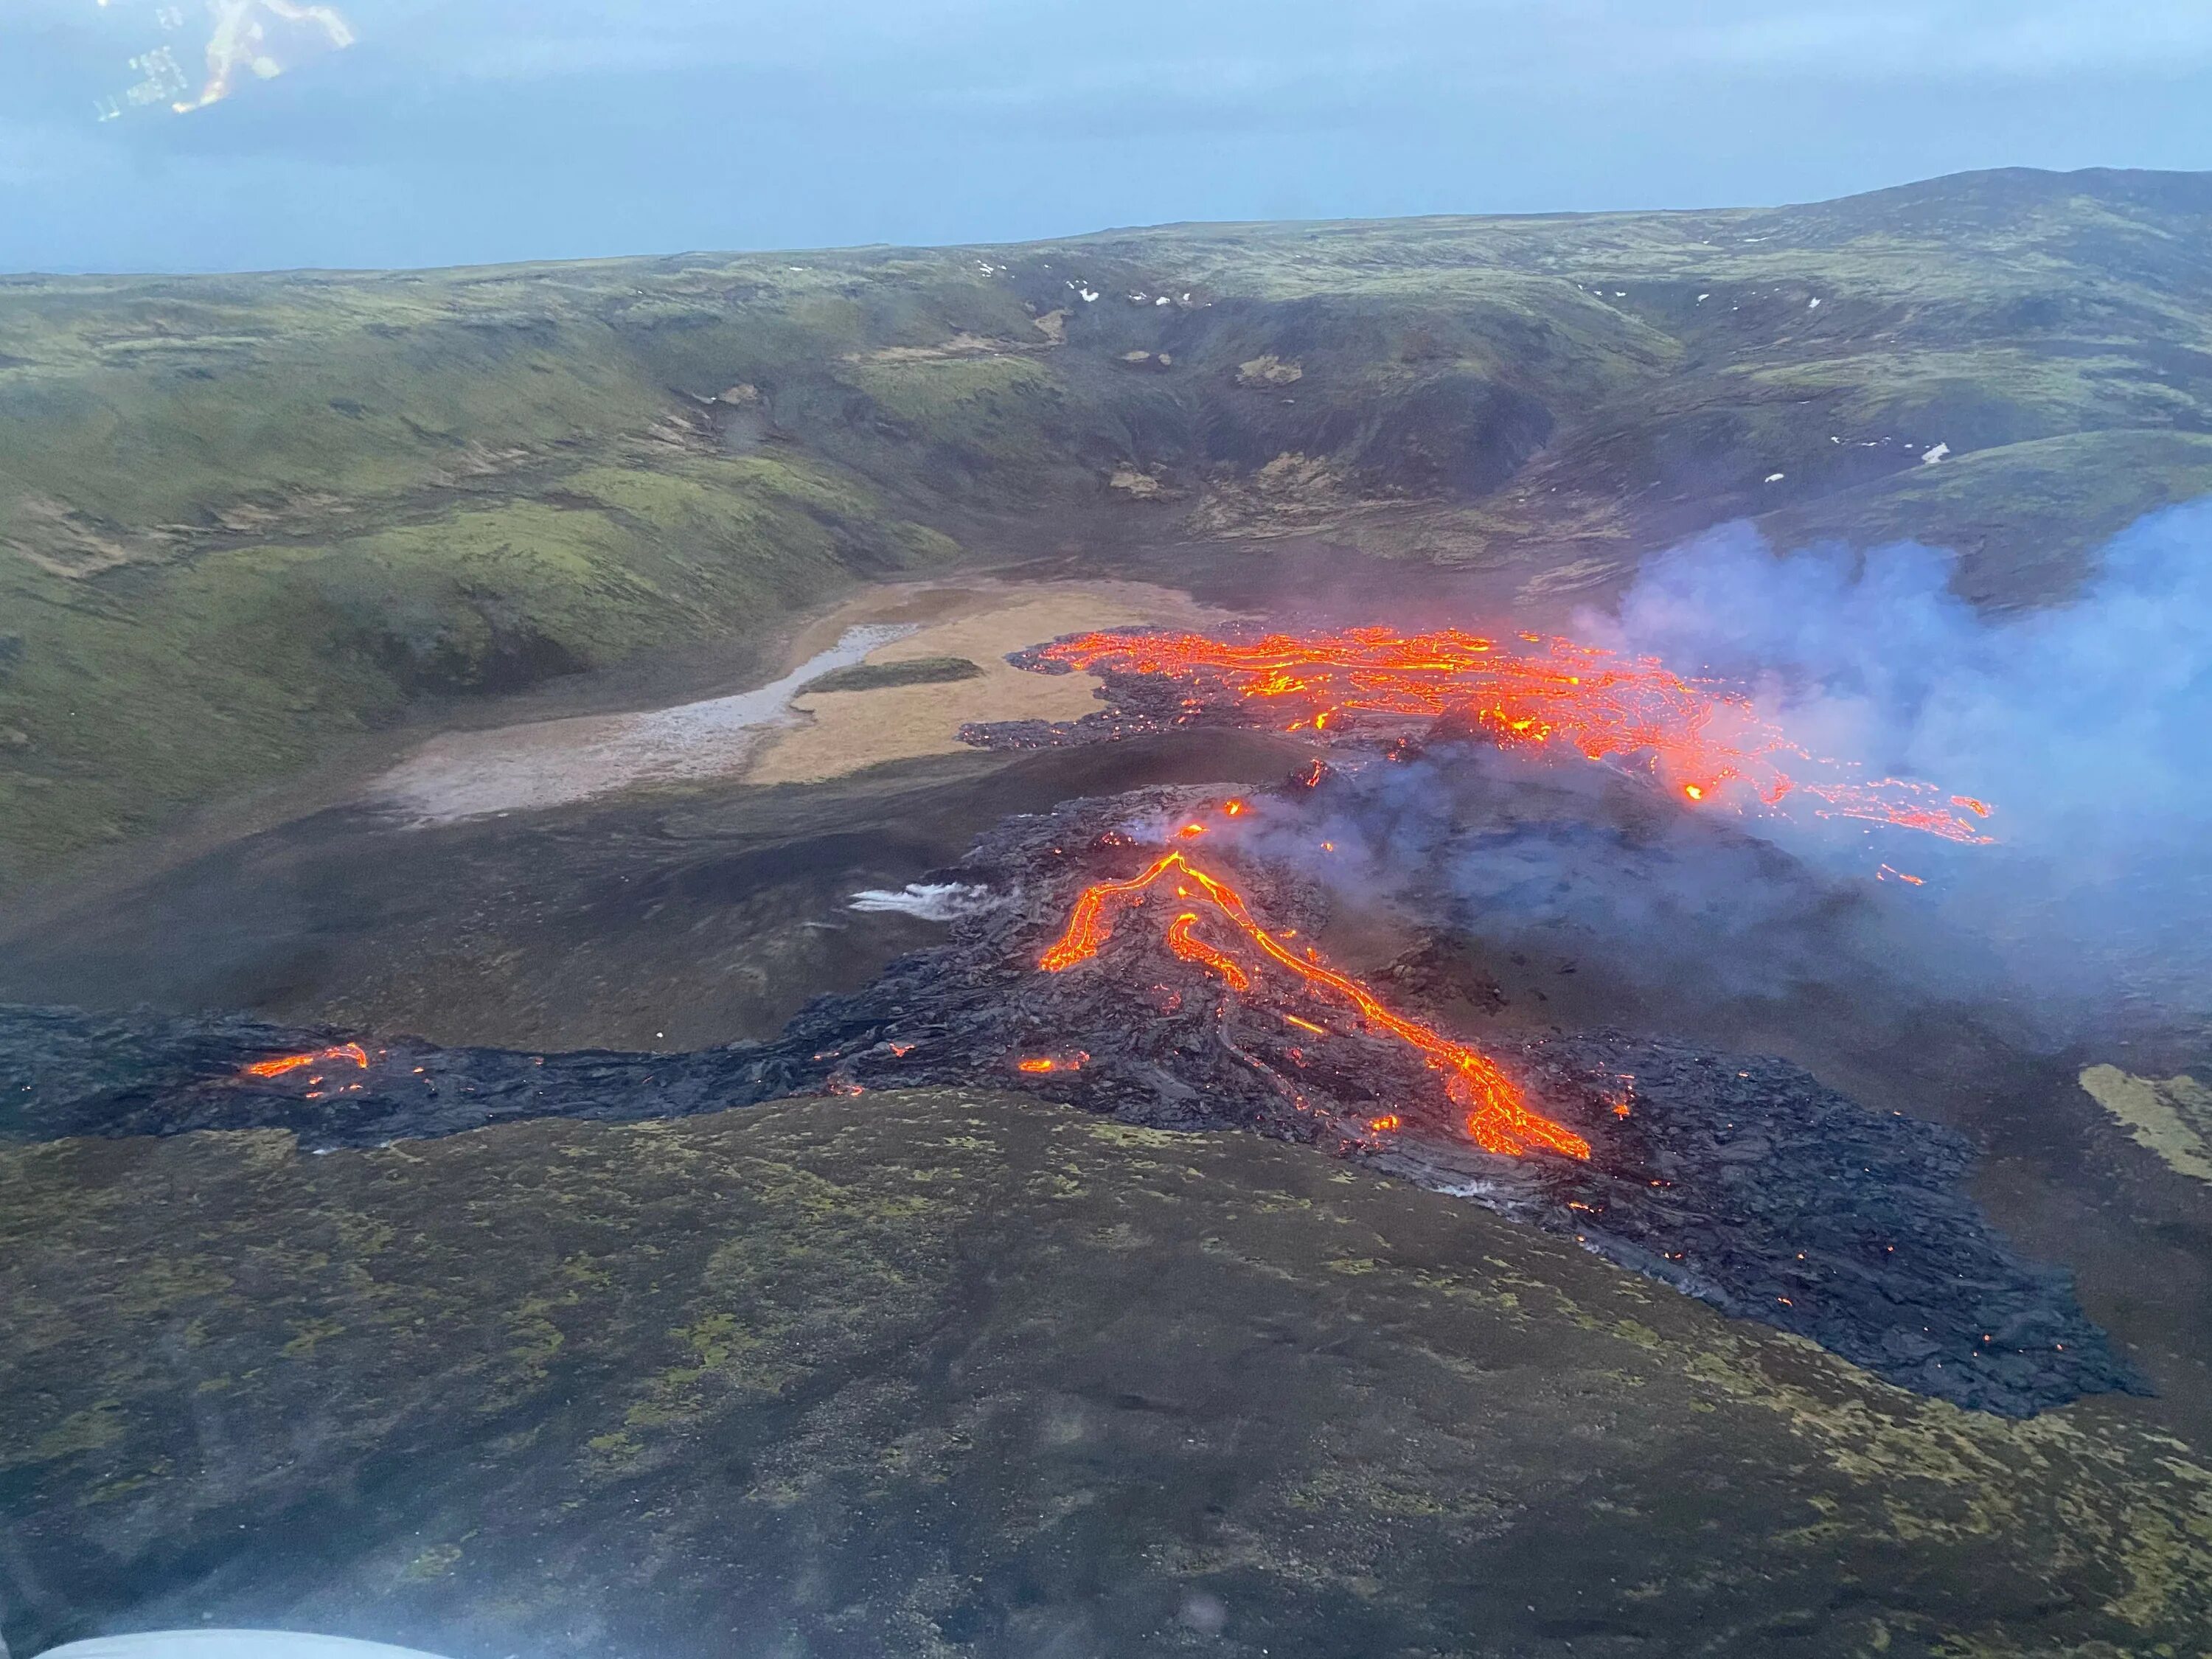 Сильные землетрясения извержения вулканов мощные гейзеры. Извержение вулкана в Исландии 2021. Извержение вулкана в Исландии Эйяфьятлайокудль. Вулкан Исландии Эйяфьятлайокудль 2010. Вулкан Эйяфьятлайокудль извержение 2010.